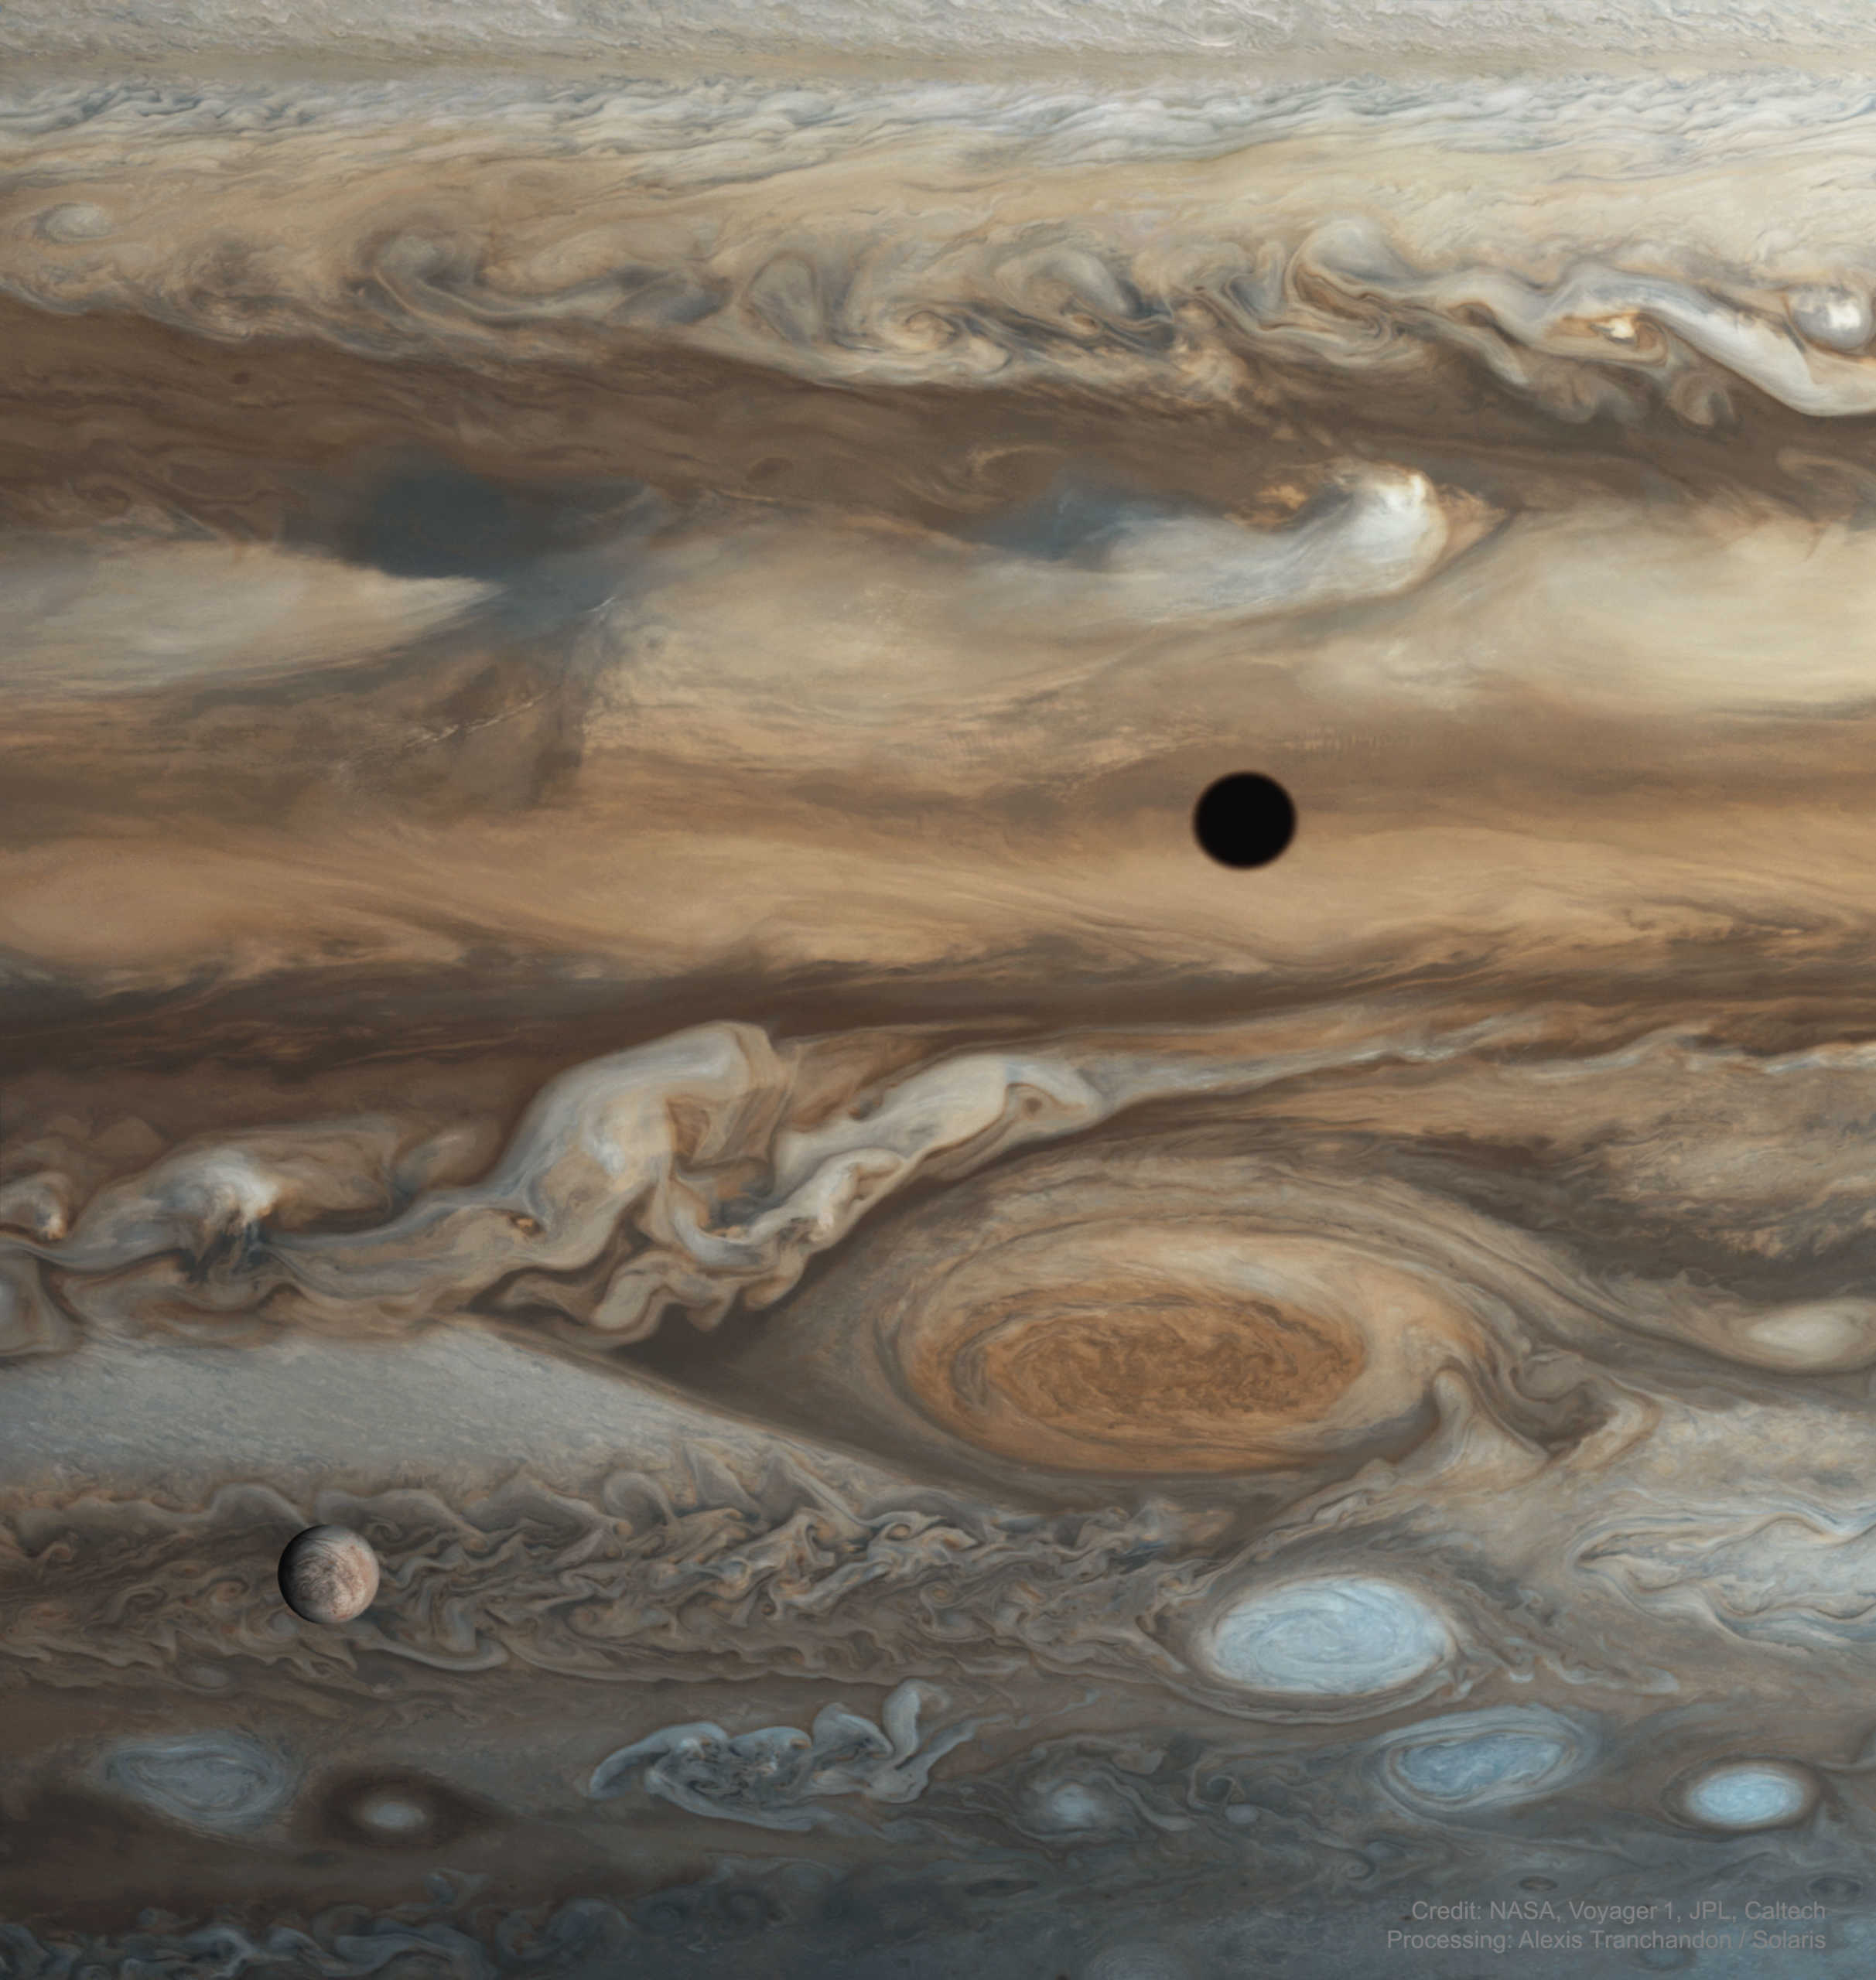 Planeten Jupiter månar europa io